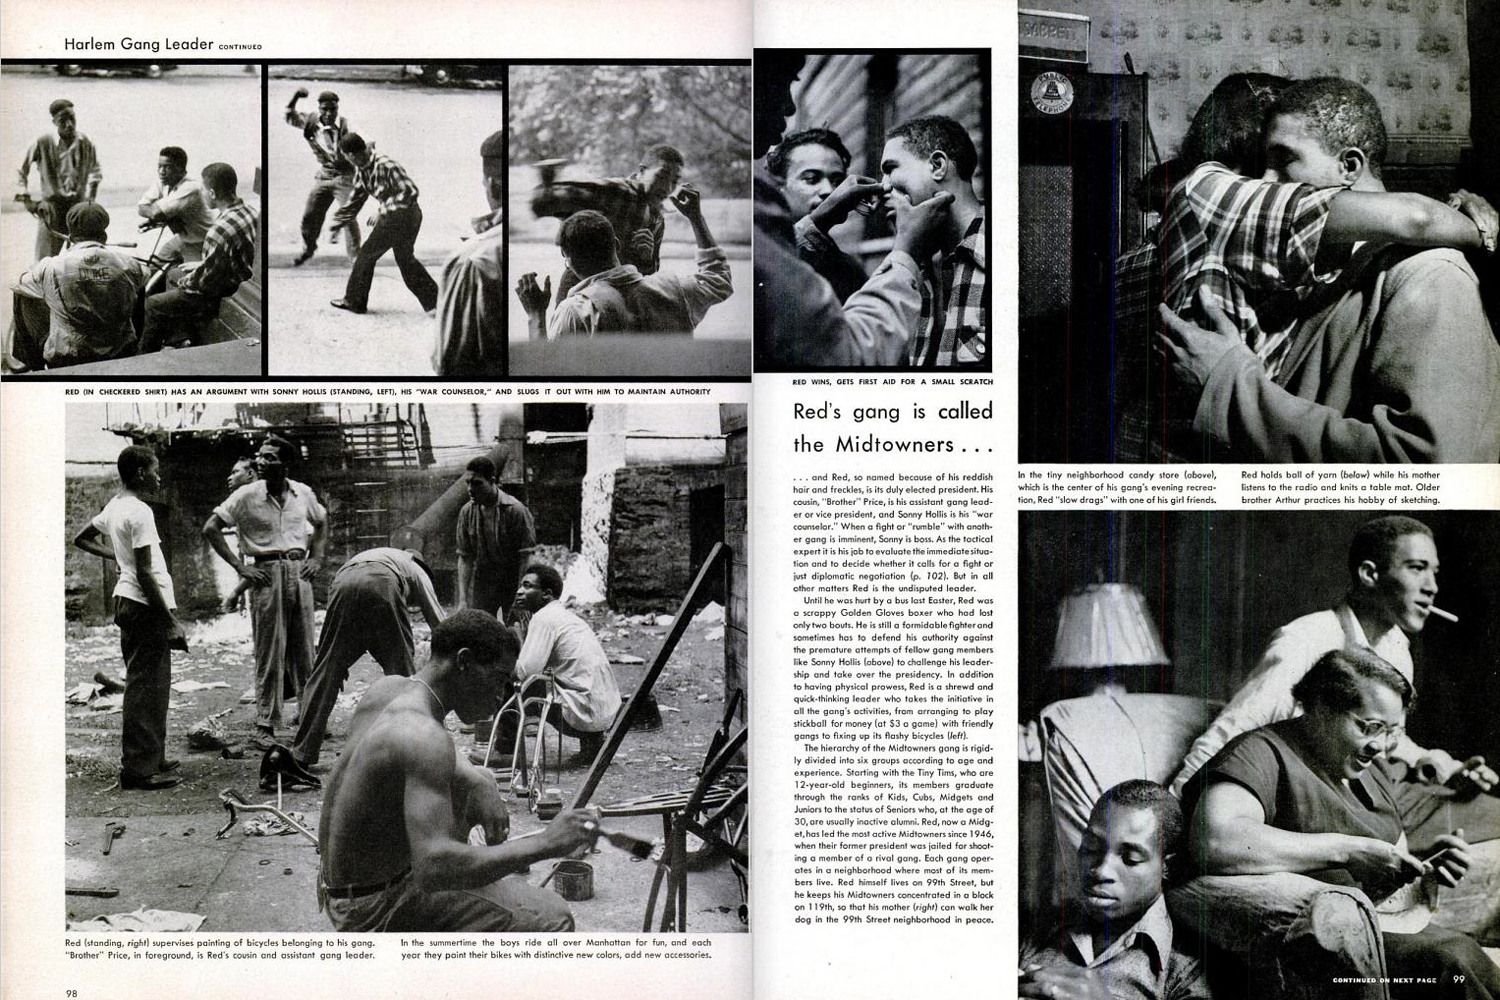 Harlem Gang Leader as published in LIFE Magazine, November 1, 1948.